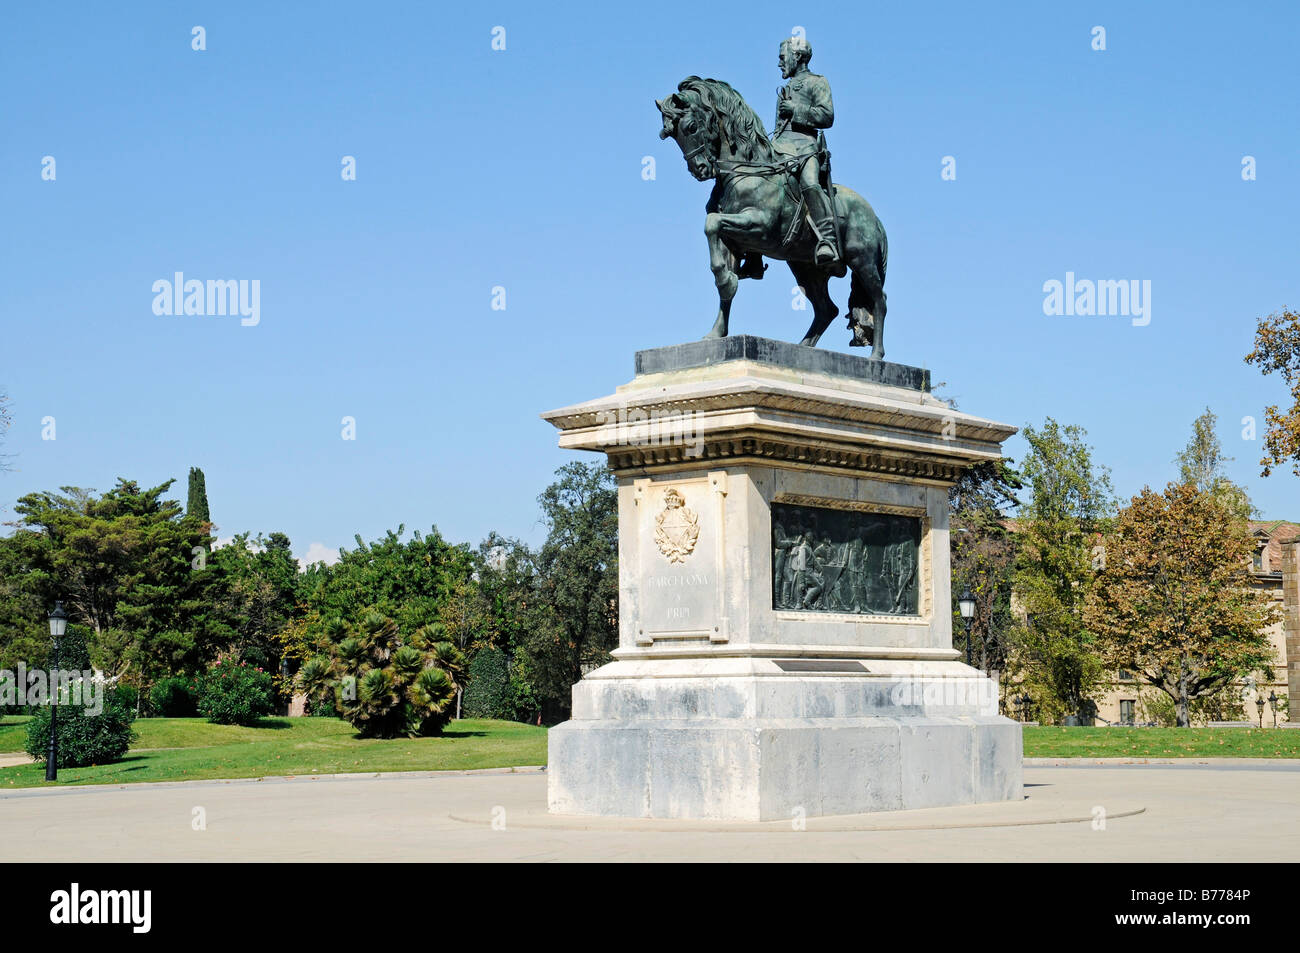 Generale Prim monumento, statua equestre, Parc de la Ciutadella, Barcellona, in Catalogna, Spagna, Europa Foto Stock